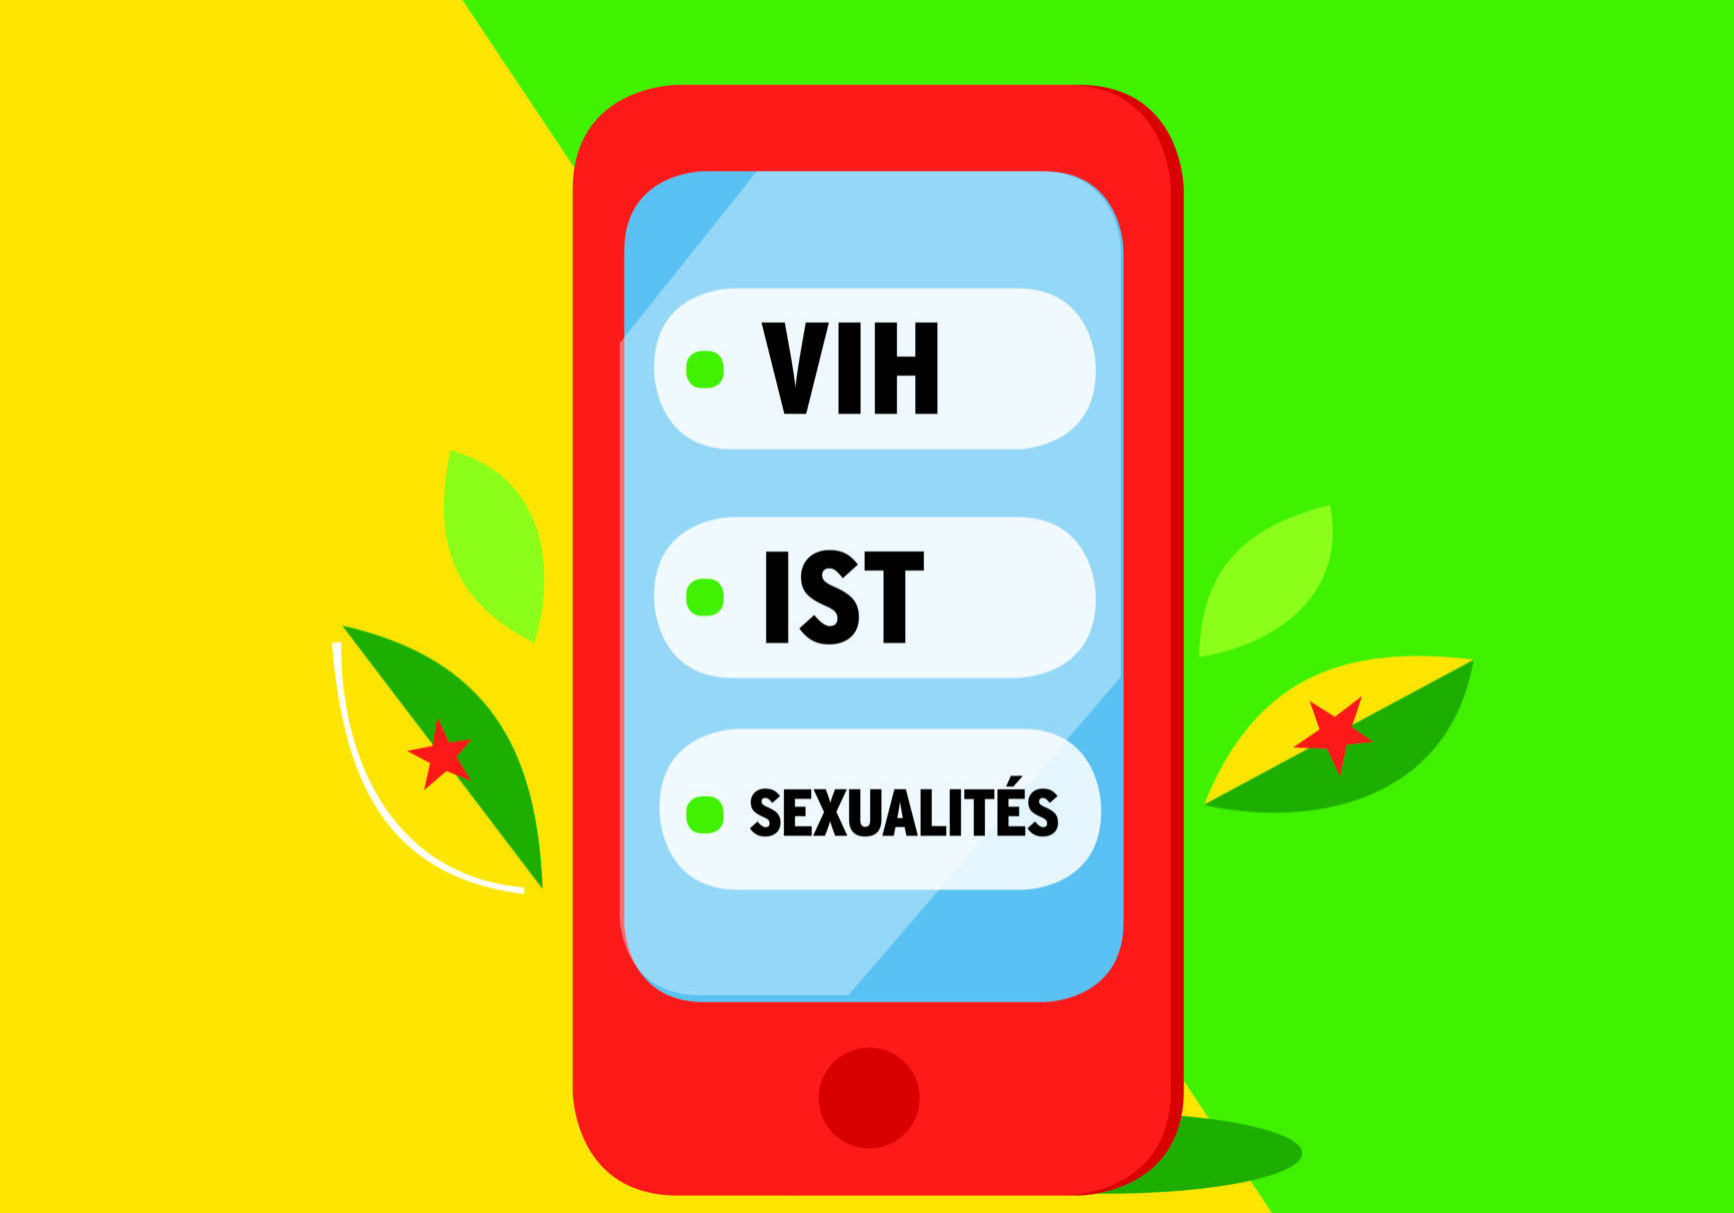 SIS Guyane : le numéro guyanais pour toutes vos questions sur le sexe